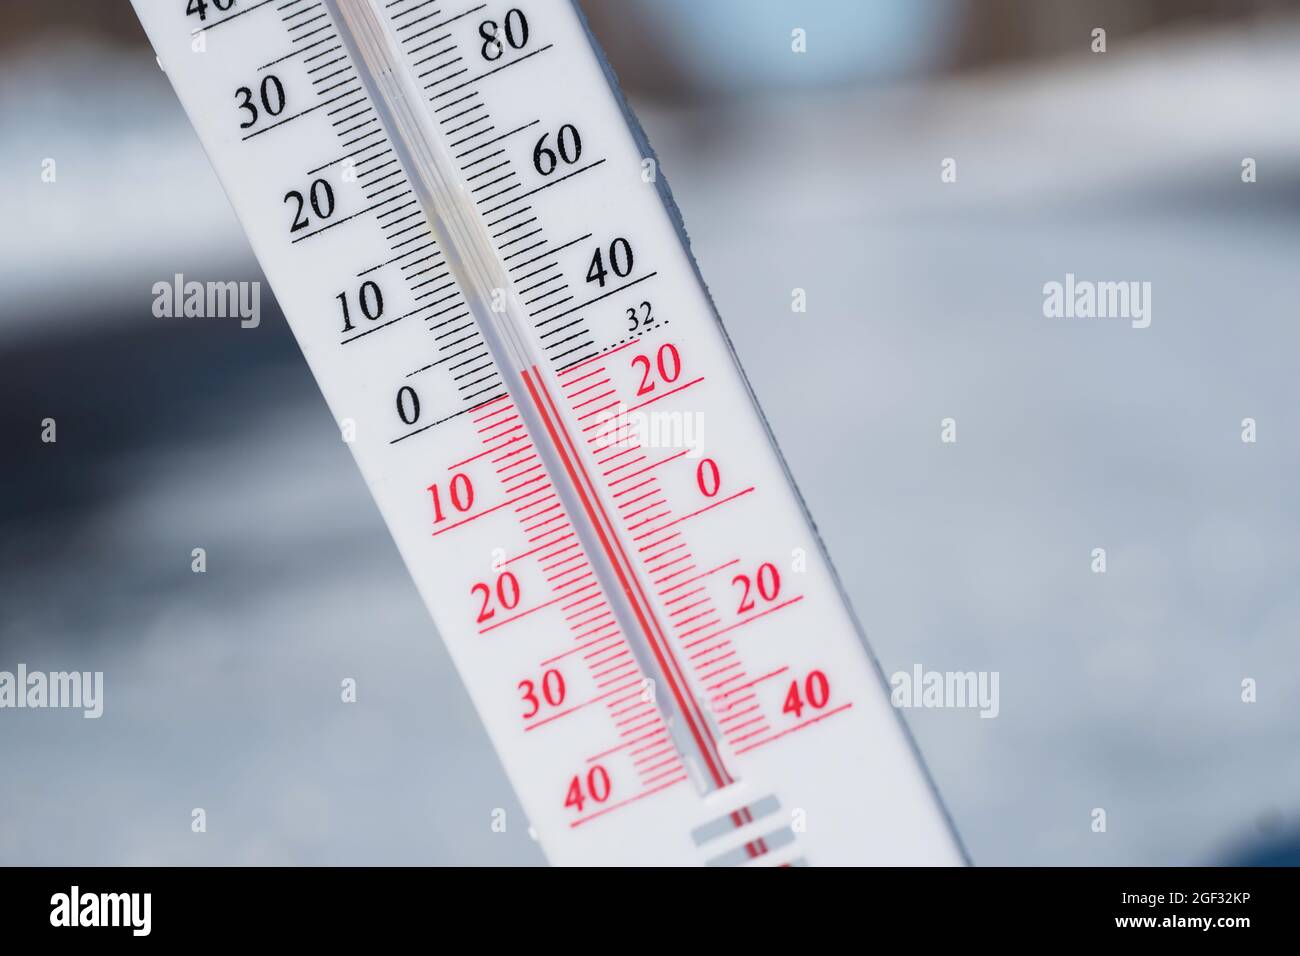 En hiver ou au printemps, le thermomètre repose sur la neige Et indique une température négative par temps froid. Conditions météorologiques avec faible débit d'air et ambie Banque D'Images